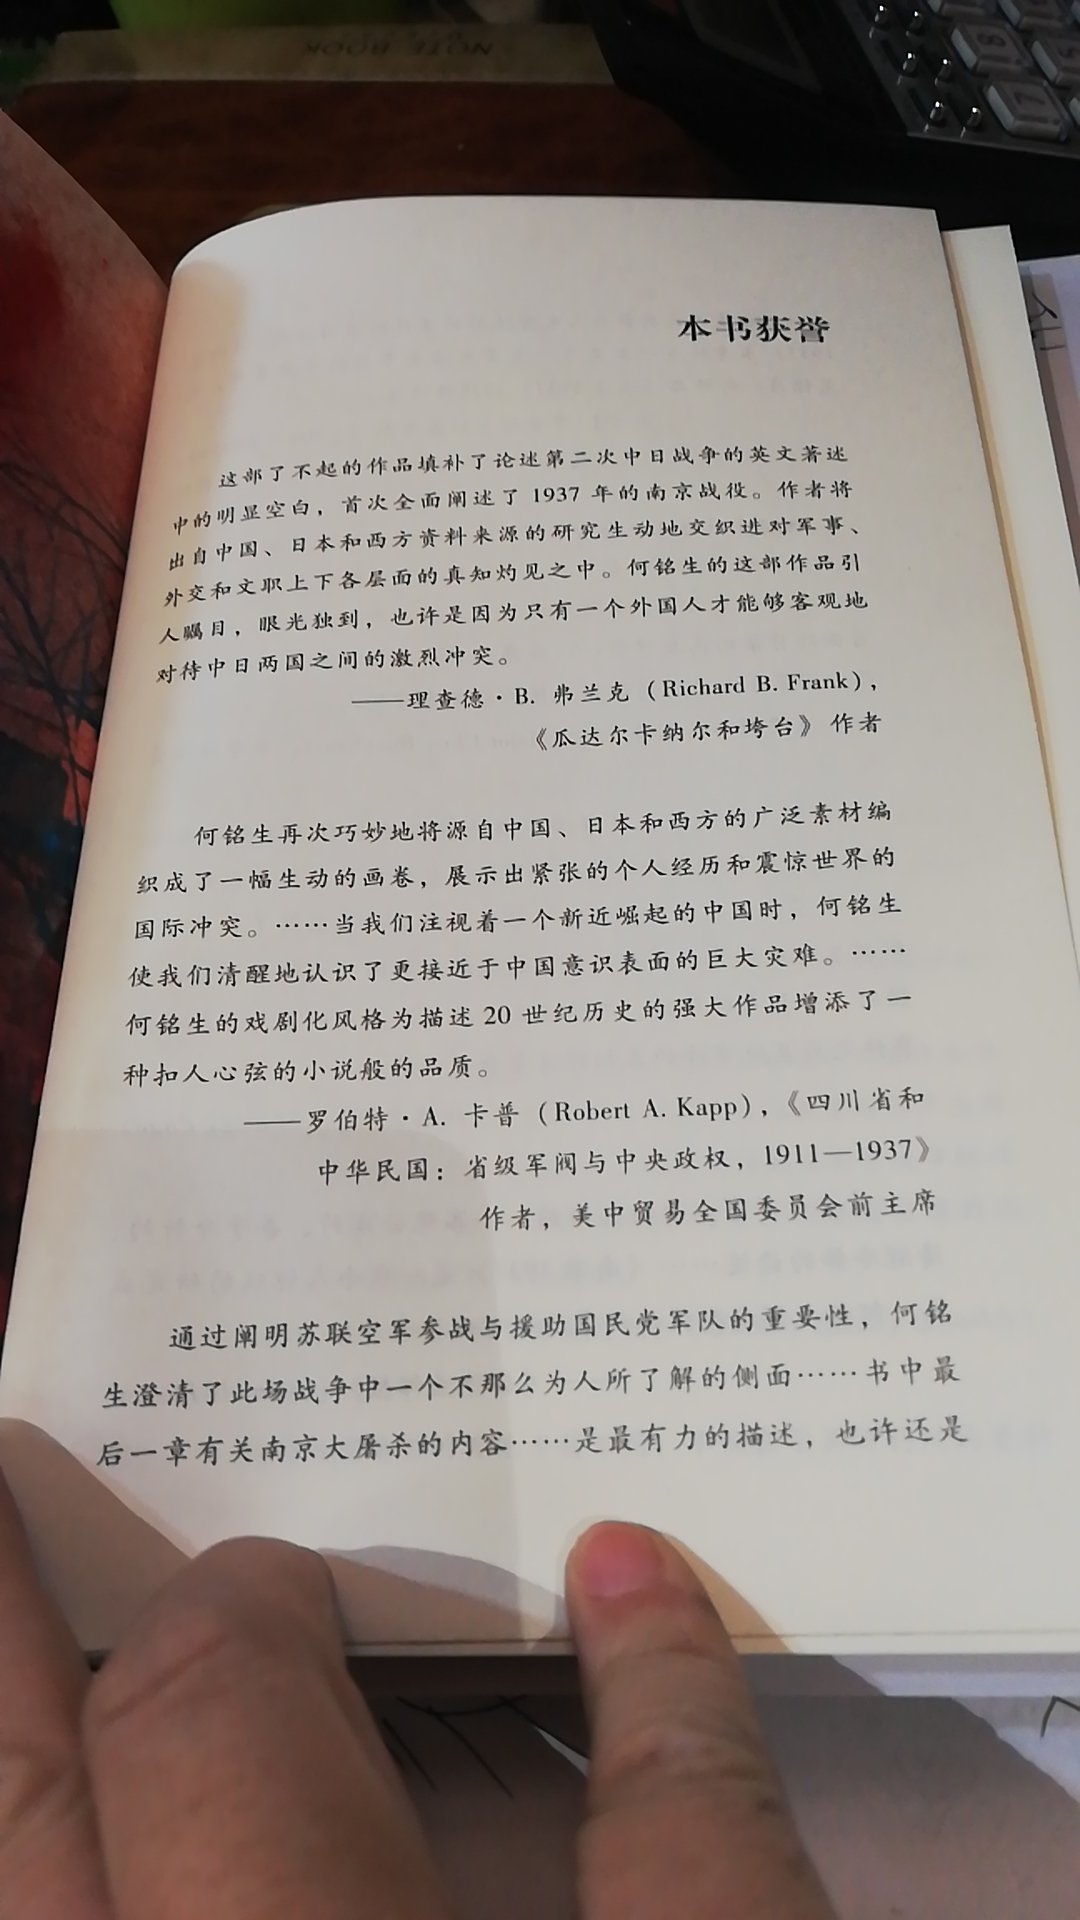 比作者第一本上海1937写的好，或者是翻译问题，觉得这本写的更好，国际大势，个人经历，国军，日军交叉的写作方式，也让人有了整体式的感知。